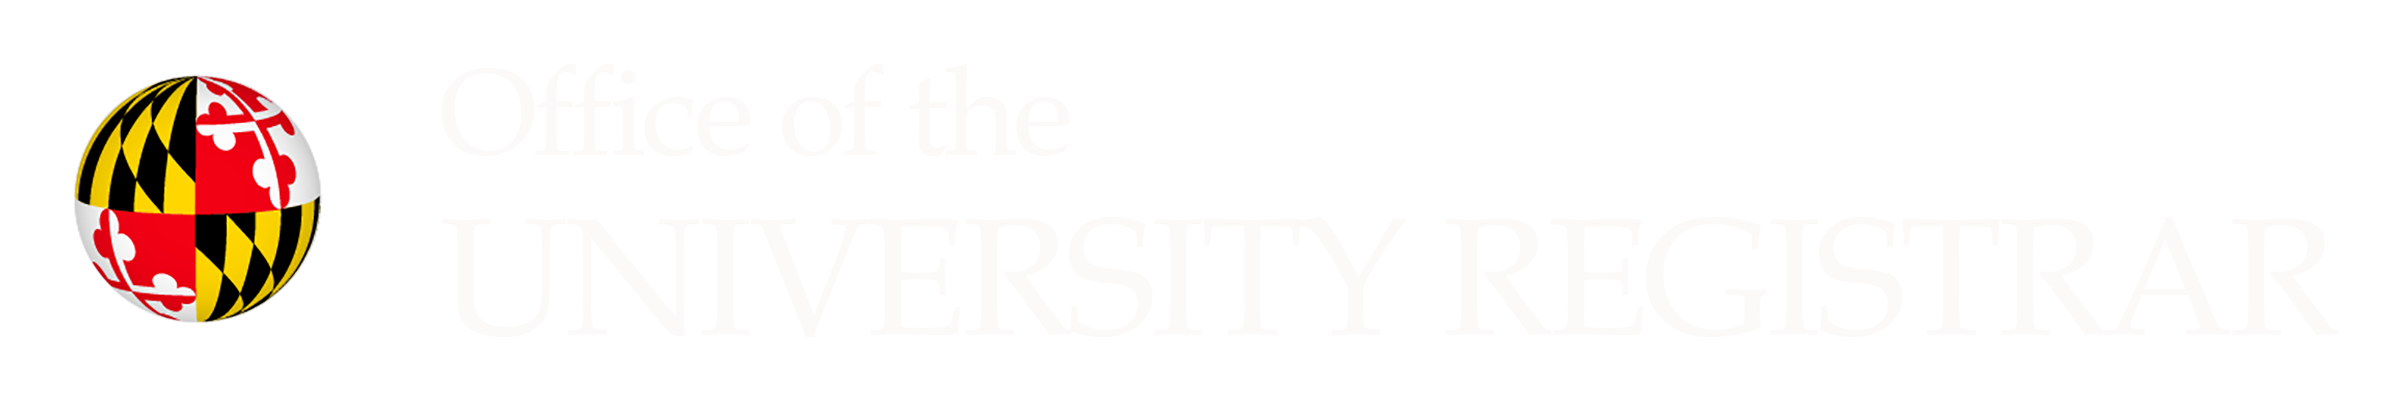 Office of the University Registrar logo